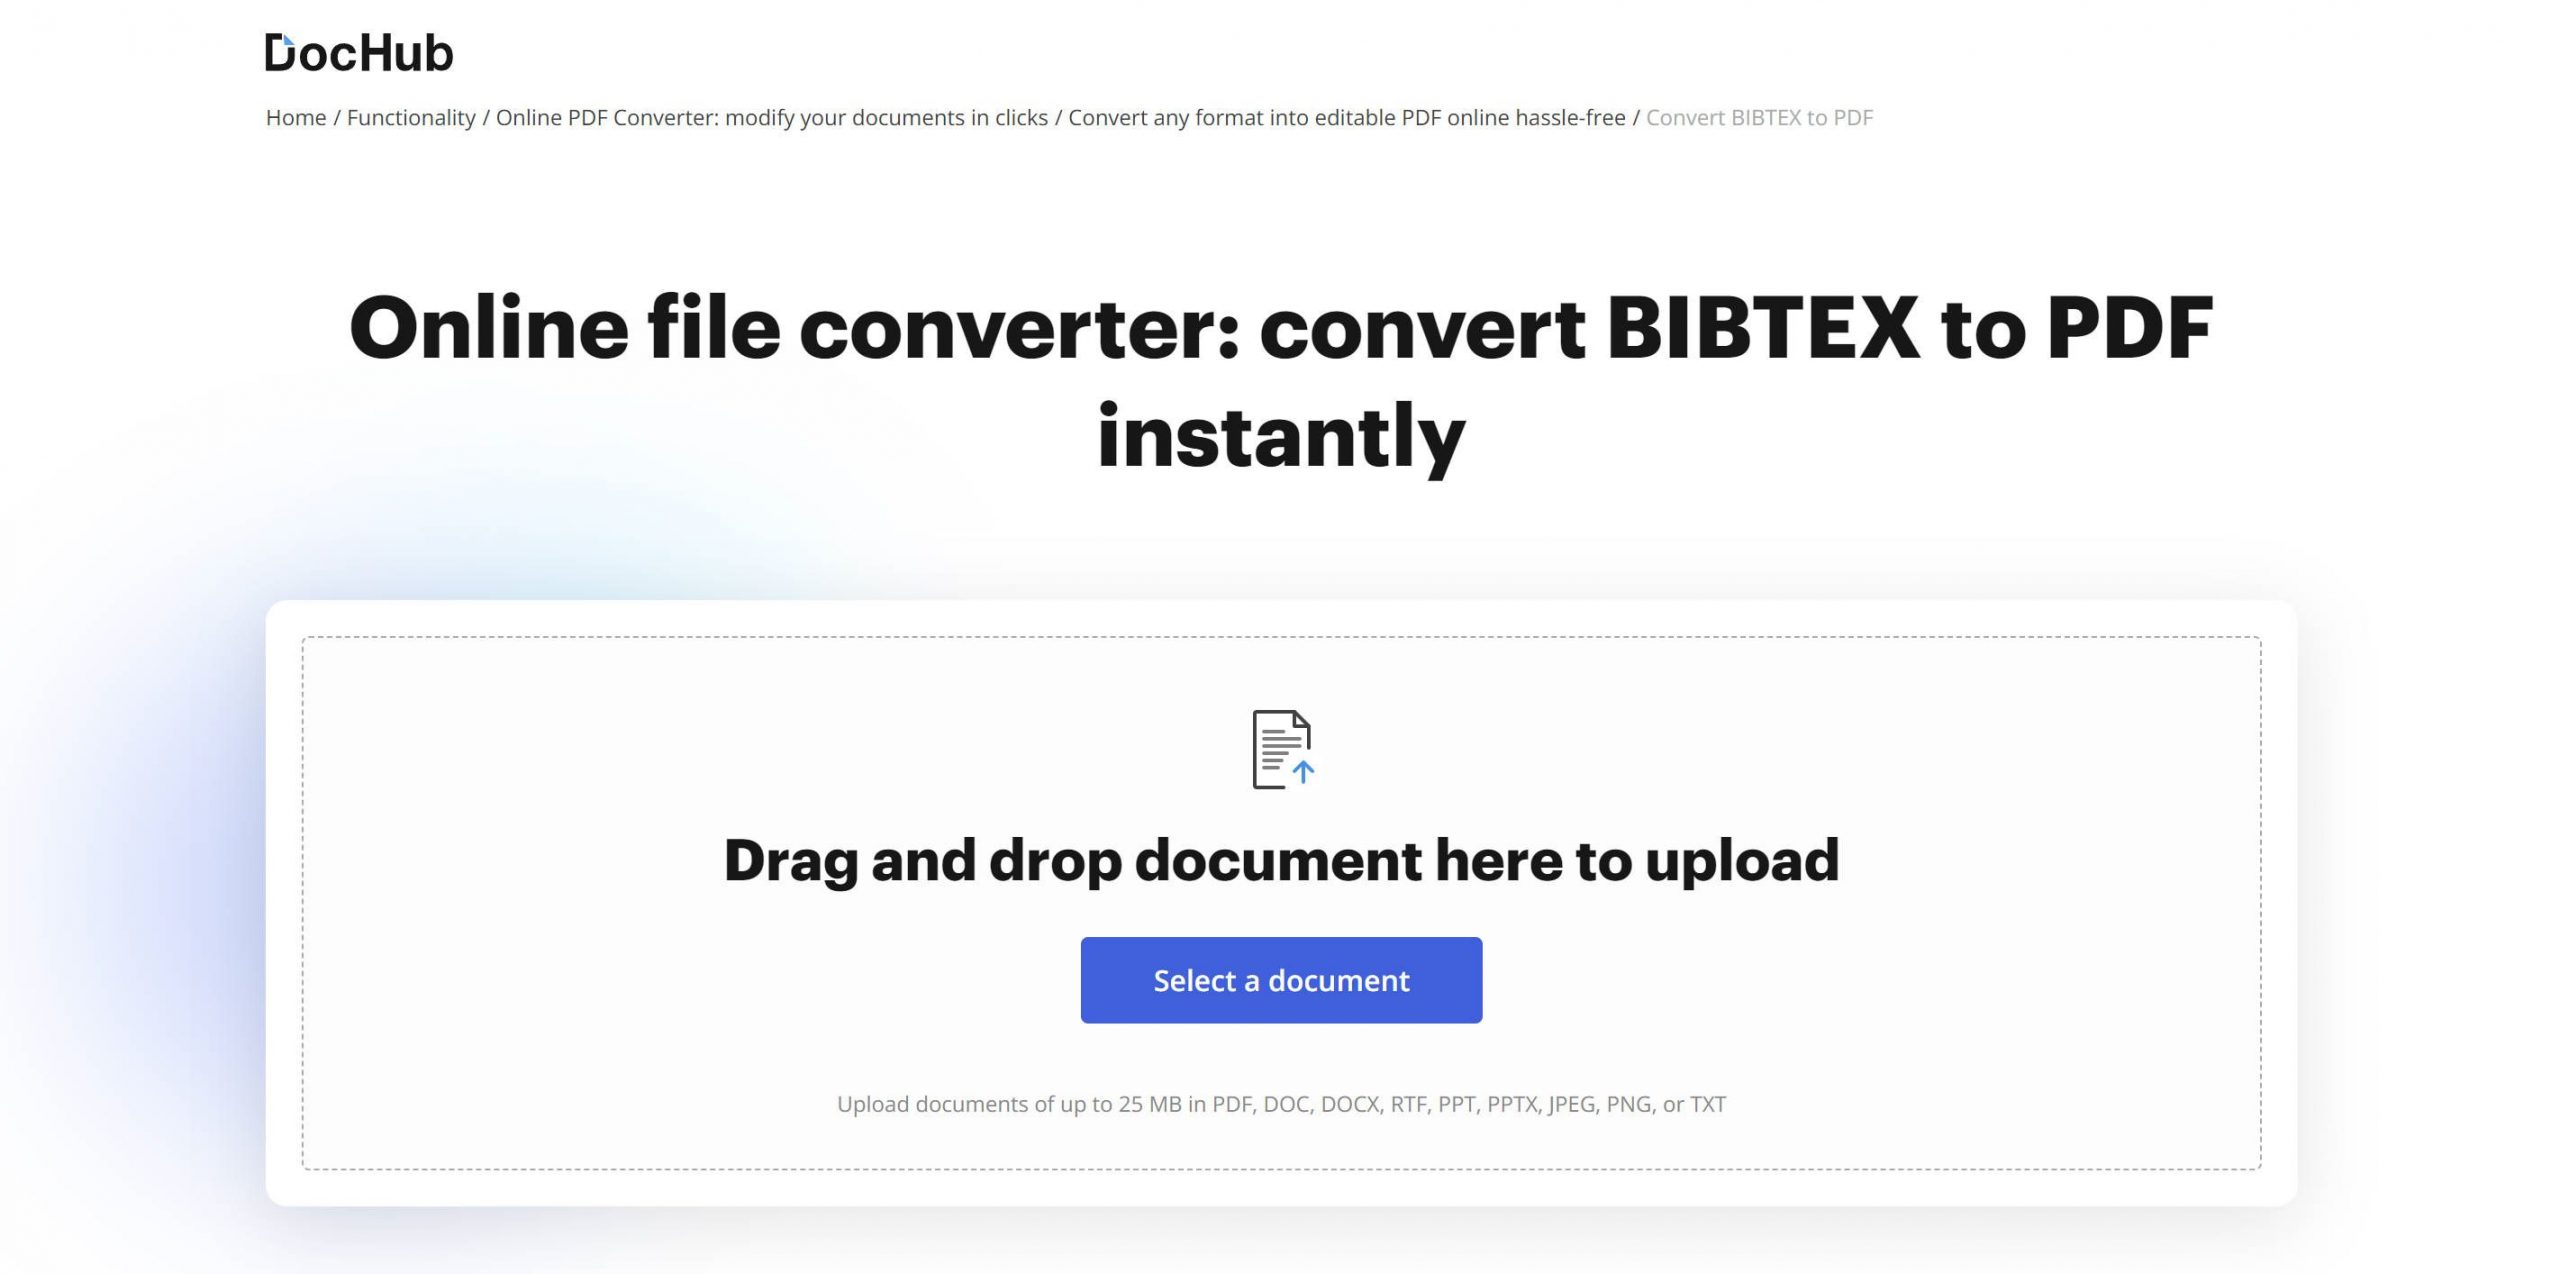 bibtex to pdf dochub